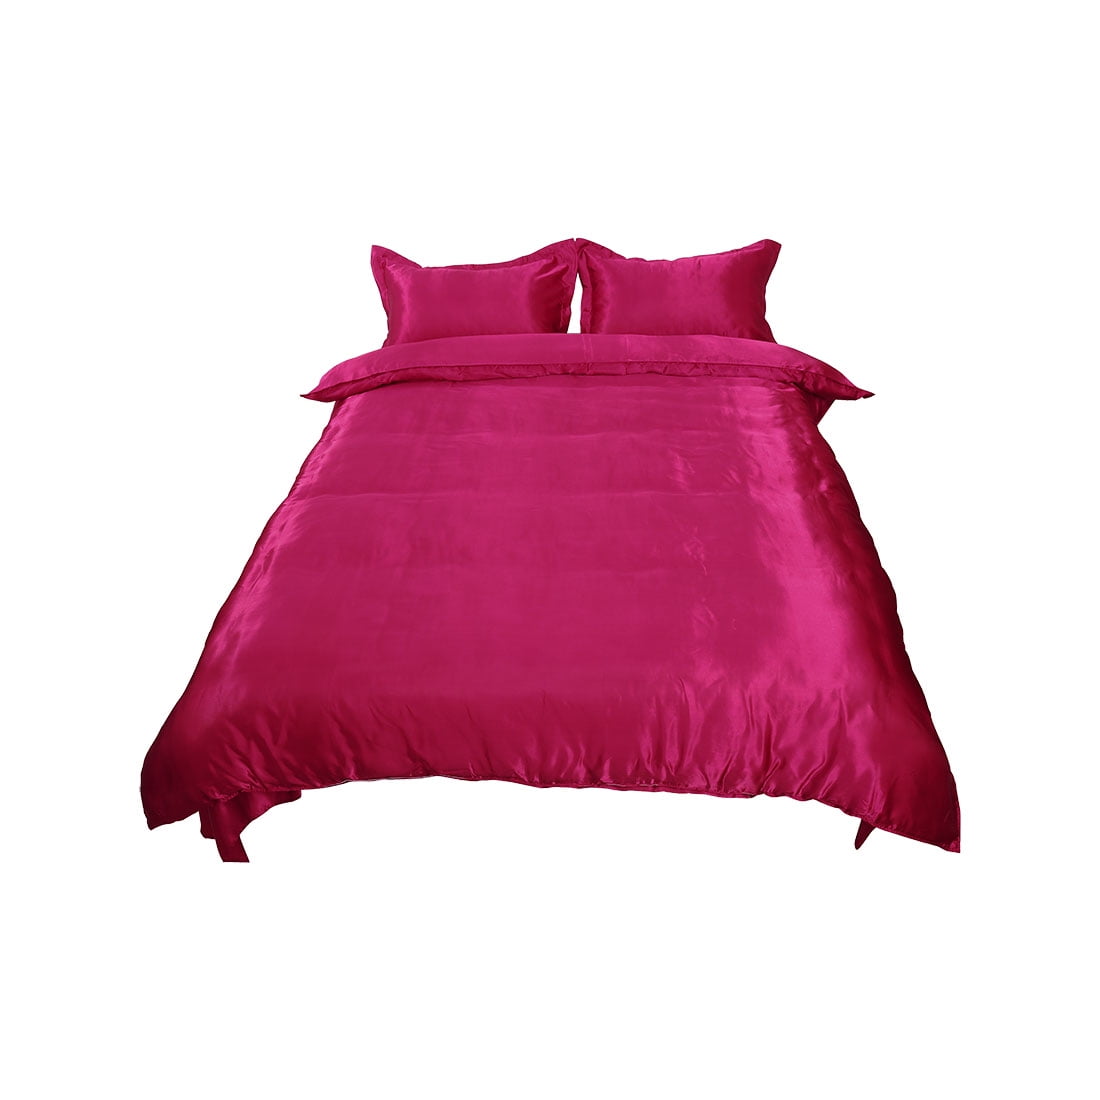 Wine Red Satin Silk Like Bedding Set Duvet Cover Pillowcase